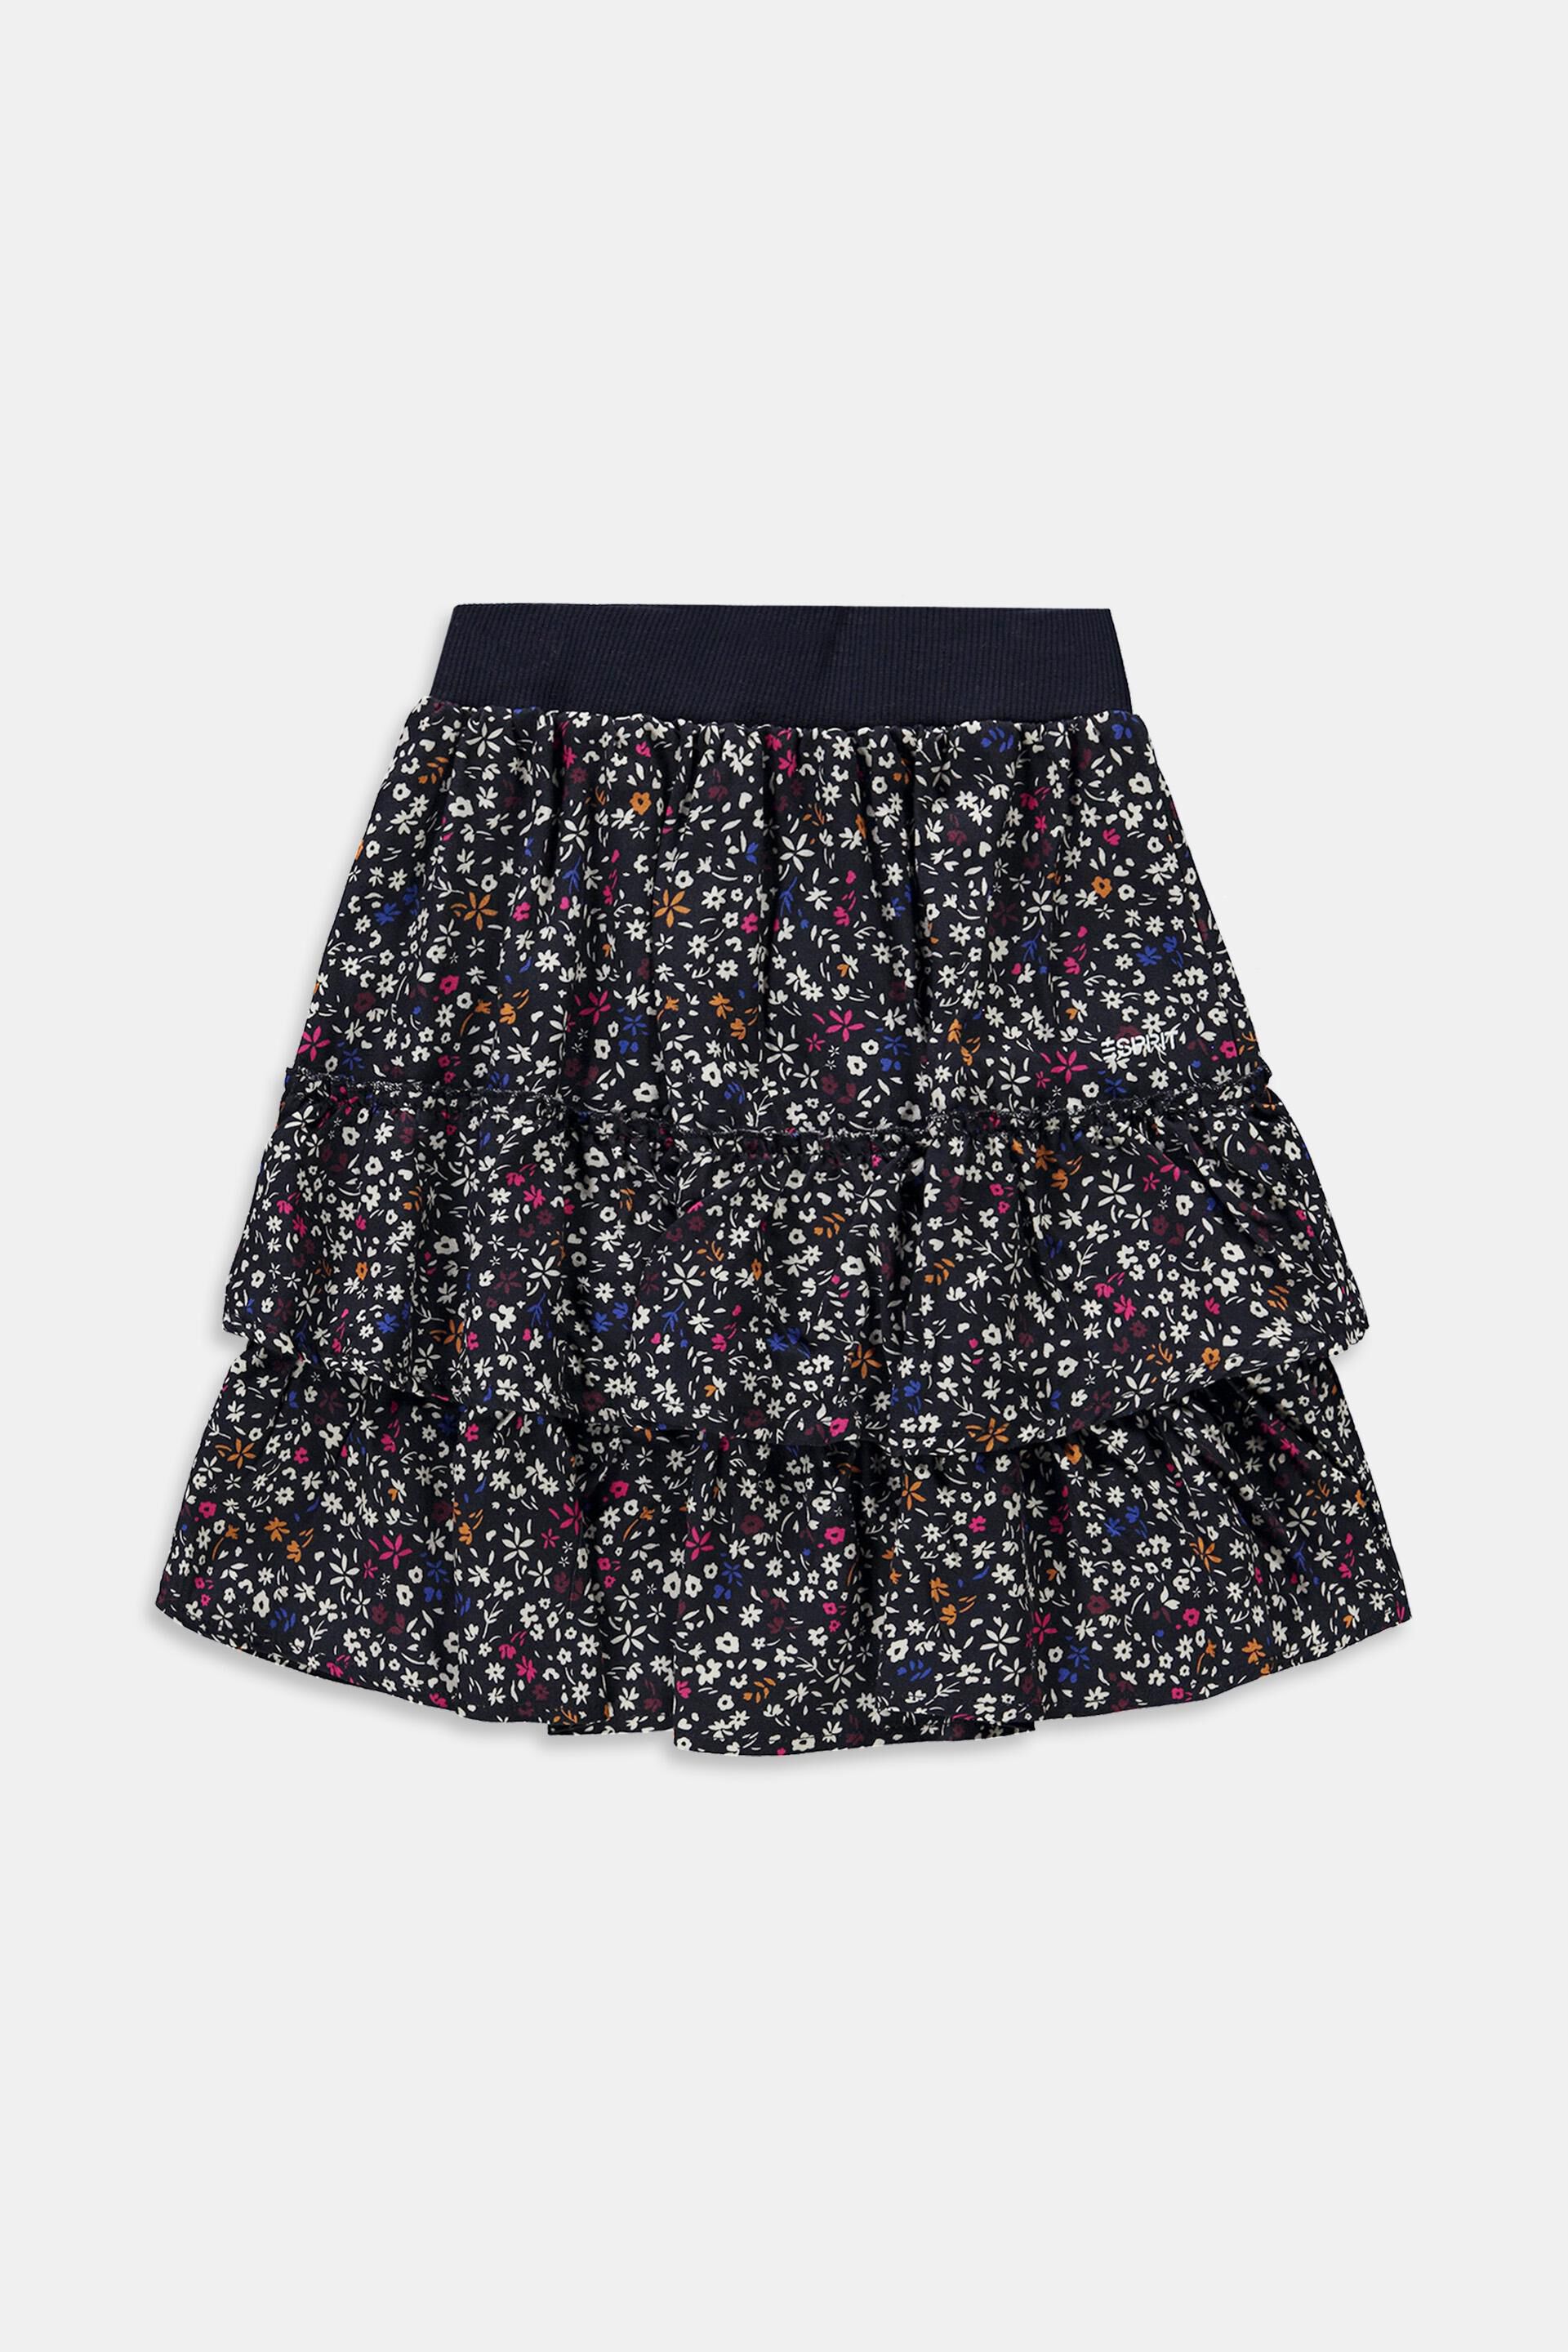 ESPRIT Kids Skirt for Girl Gonna Bambina 